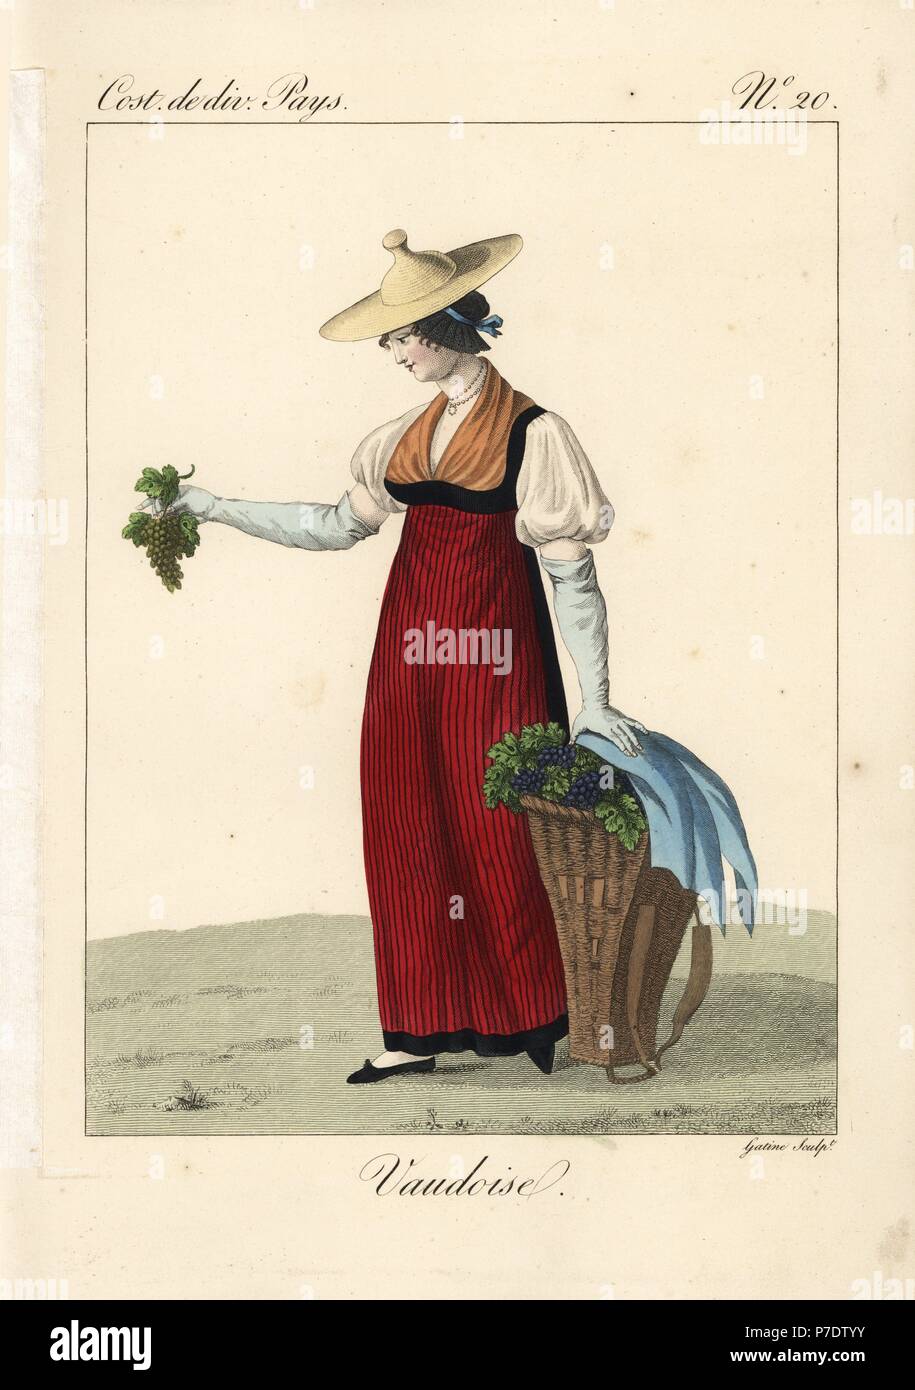 Frau Kommissionierung Trauben in der traditionellen Tracht der Waadt,  Schweiz, 19. Ihr Stroh Hut hat eine protruberance in der Form eines  Engpass, und ist über eine schwarze Haube mit Band gebunden getragen.